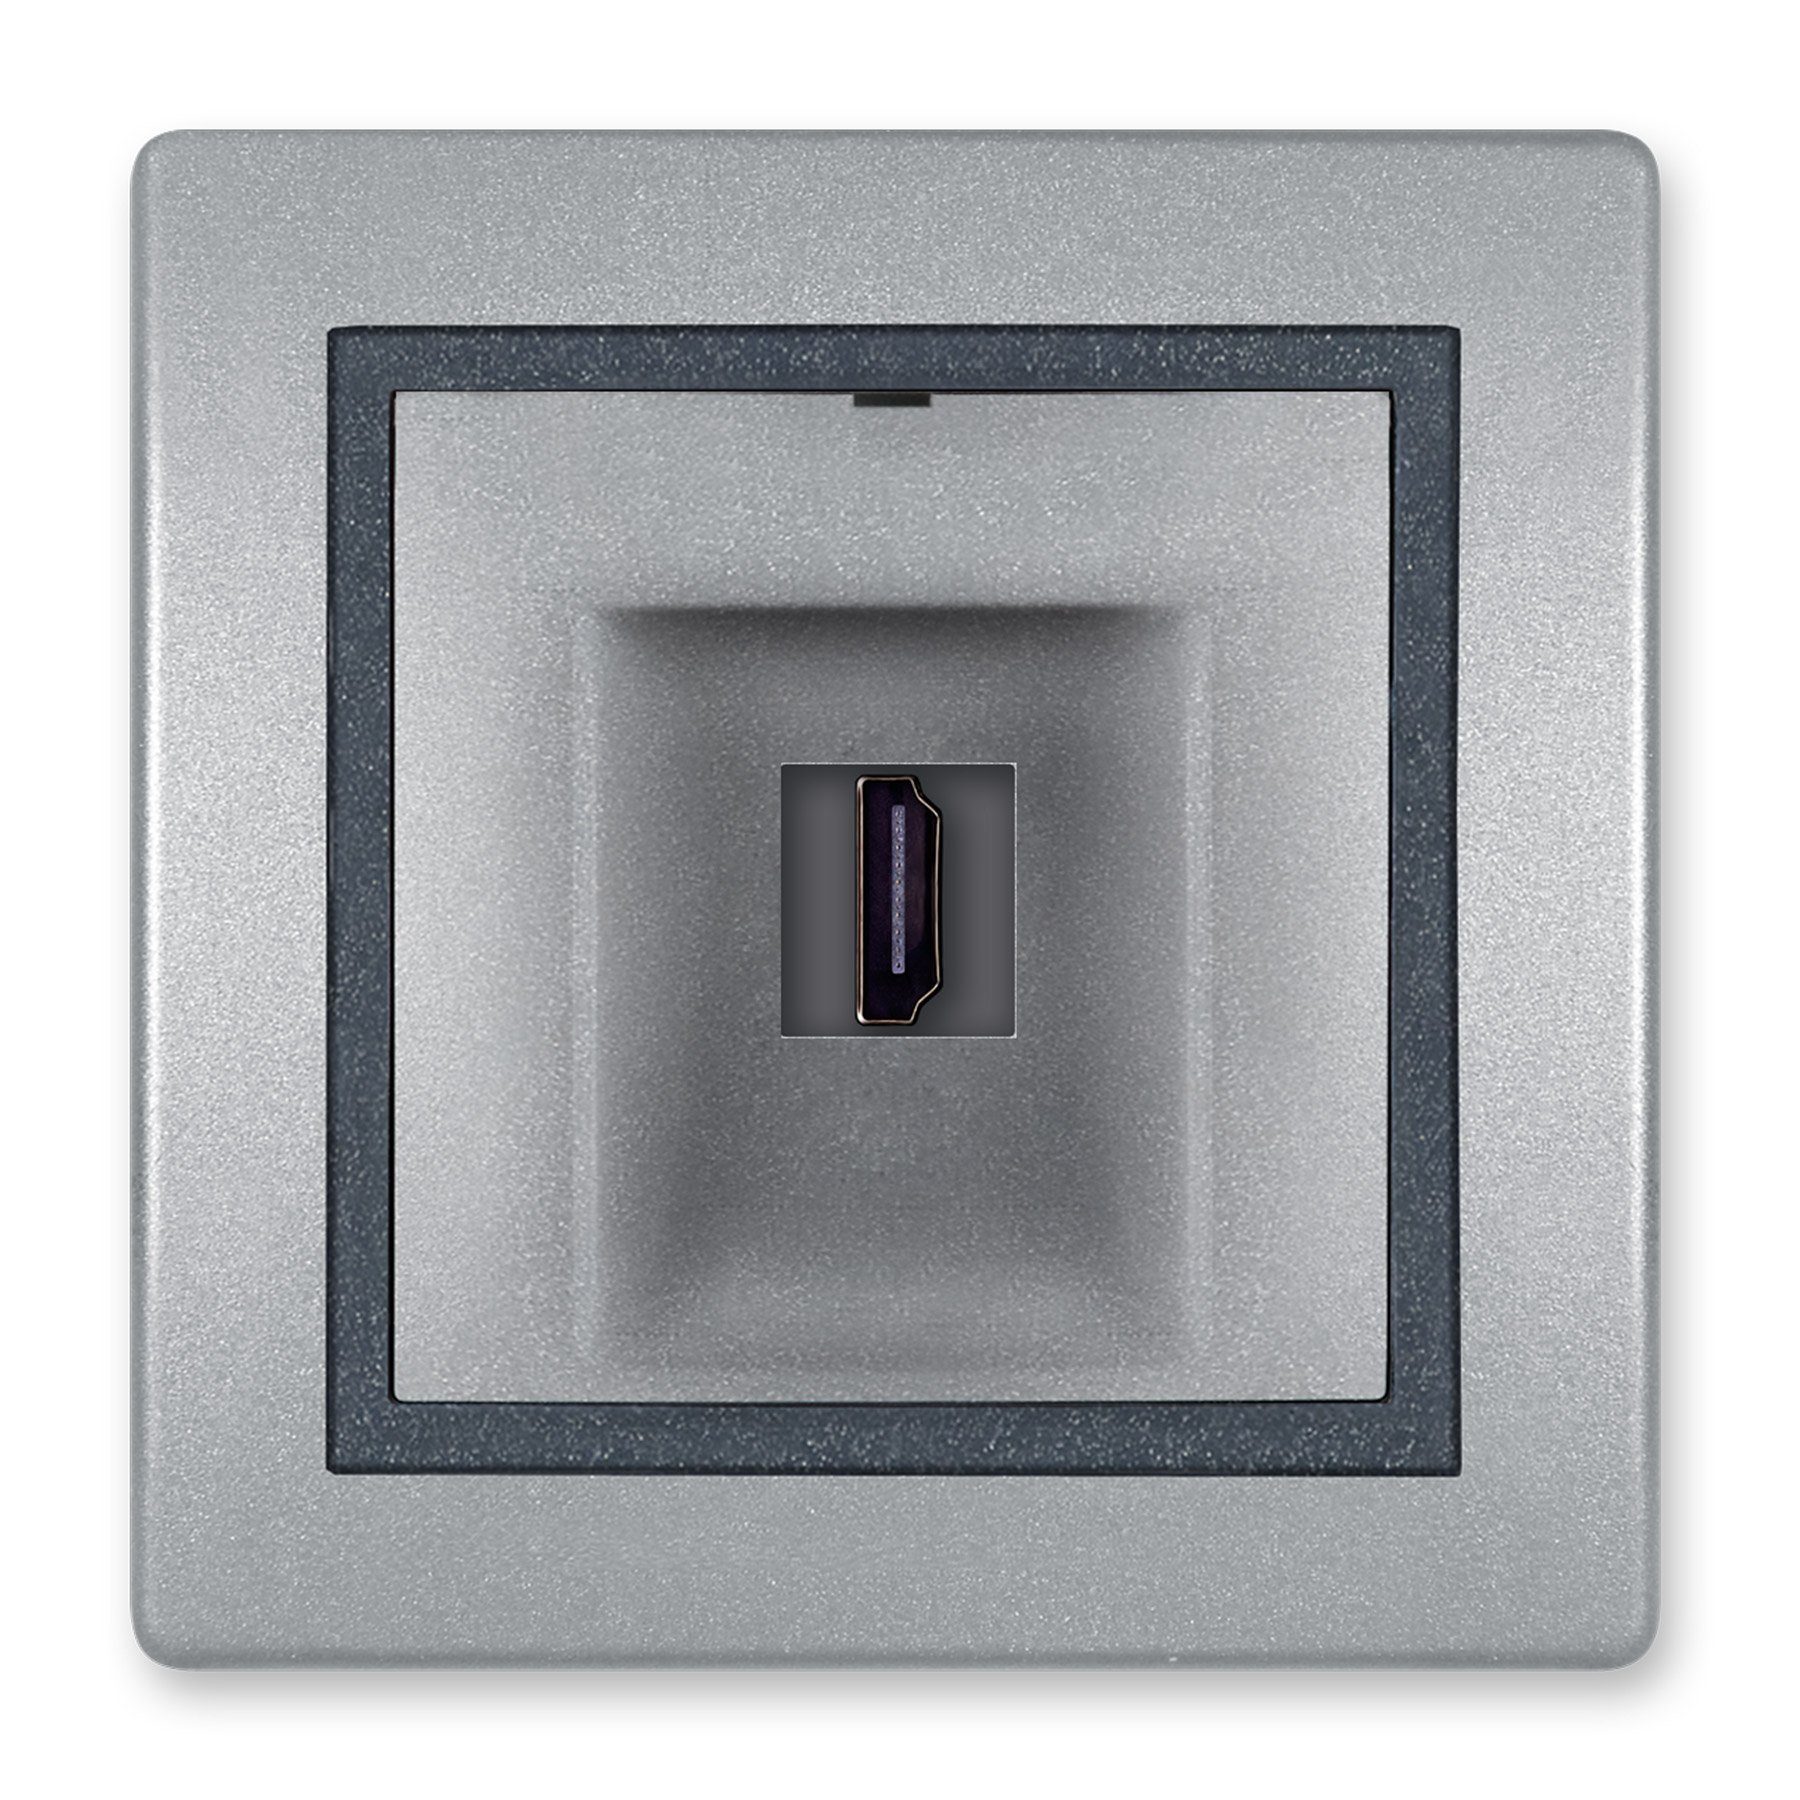 Aling Conel Lichtschalter Prestige Line Schalter ohne Glimmlampe Schwarz  Soft Touch (Packung), VDE-zertifiziert